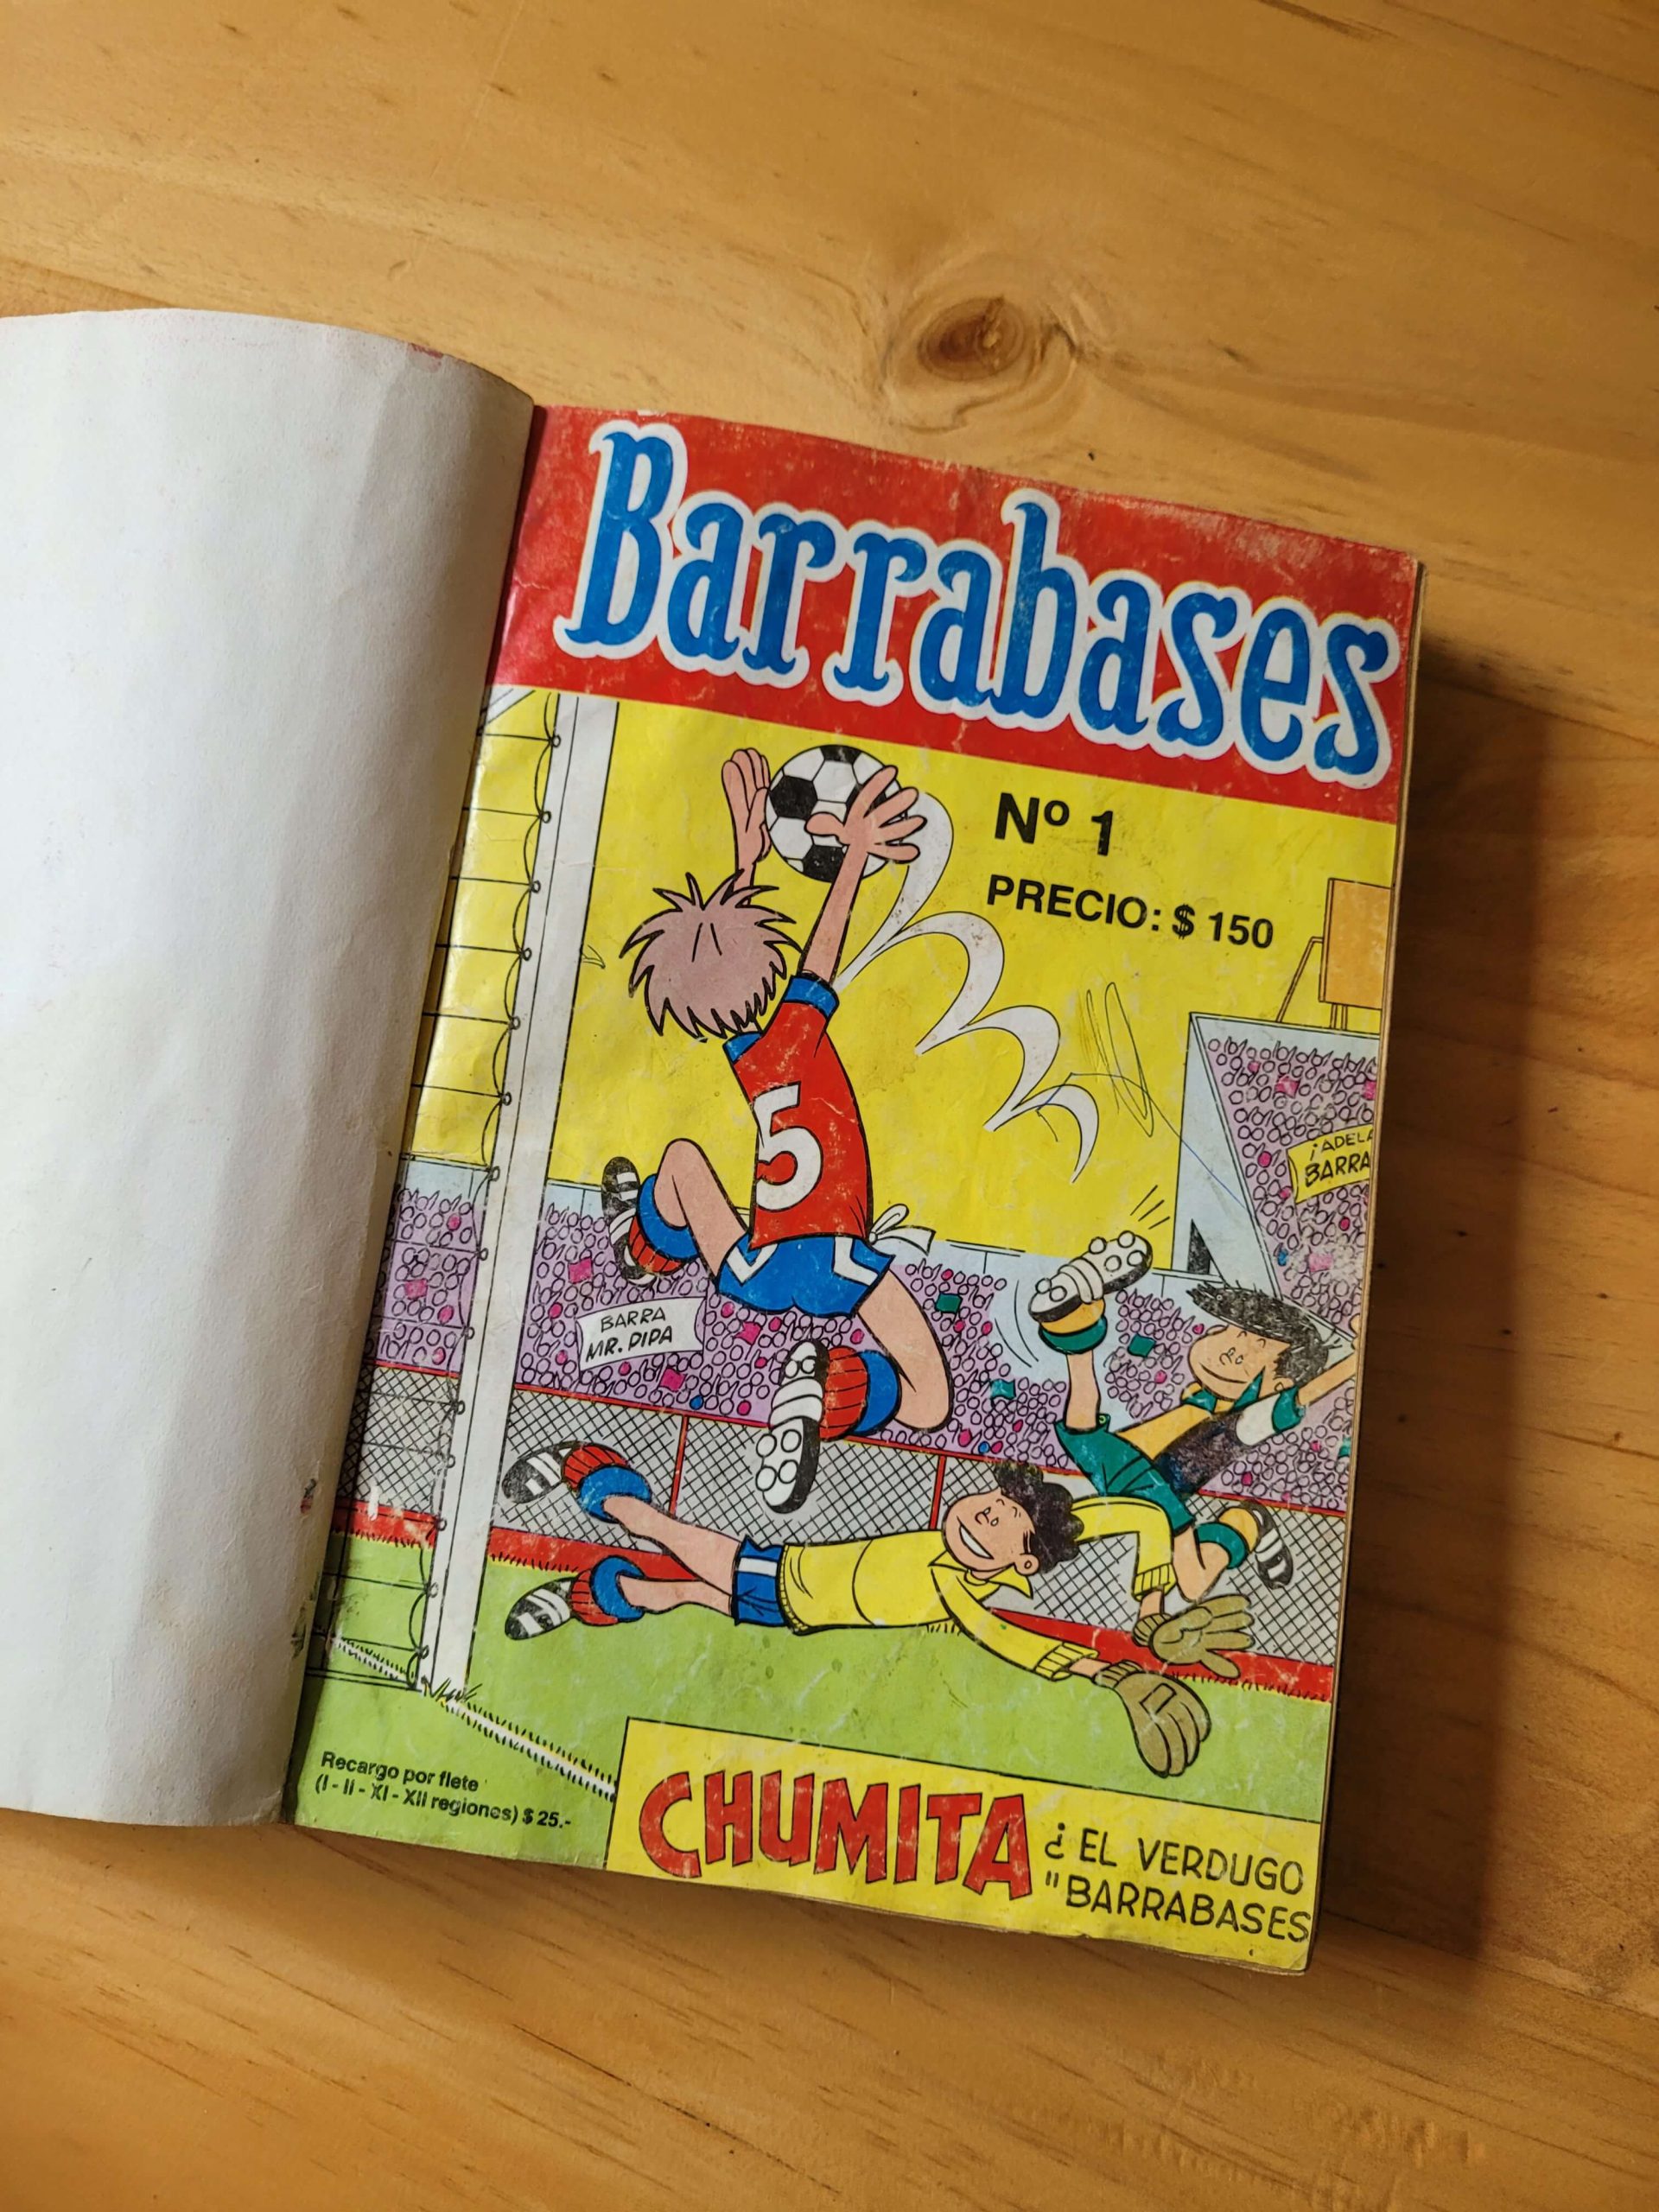 (1989) Empaste revista BARRABASES, 4ta aparición (10 primeras revistas + Edición especial)